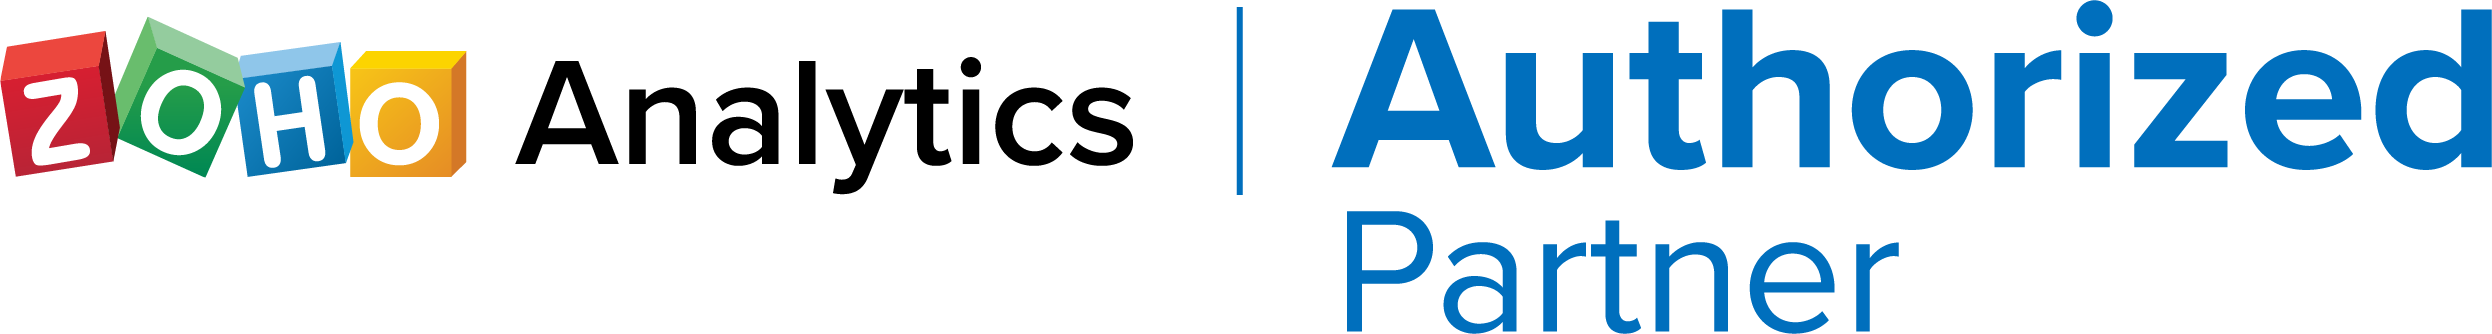 Zoho-Analytics-Authorized-Partner Logo